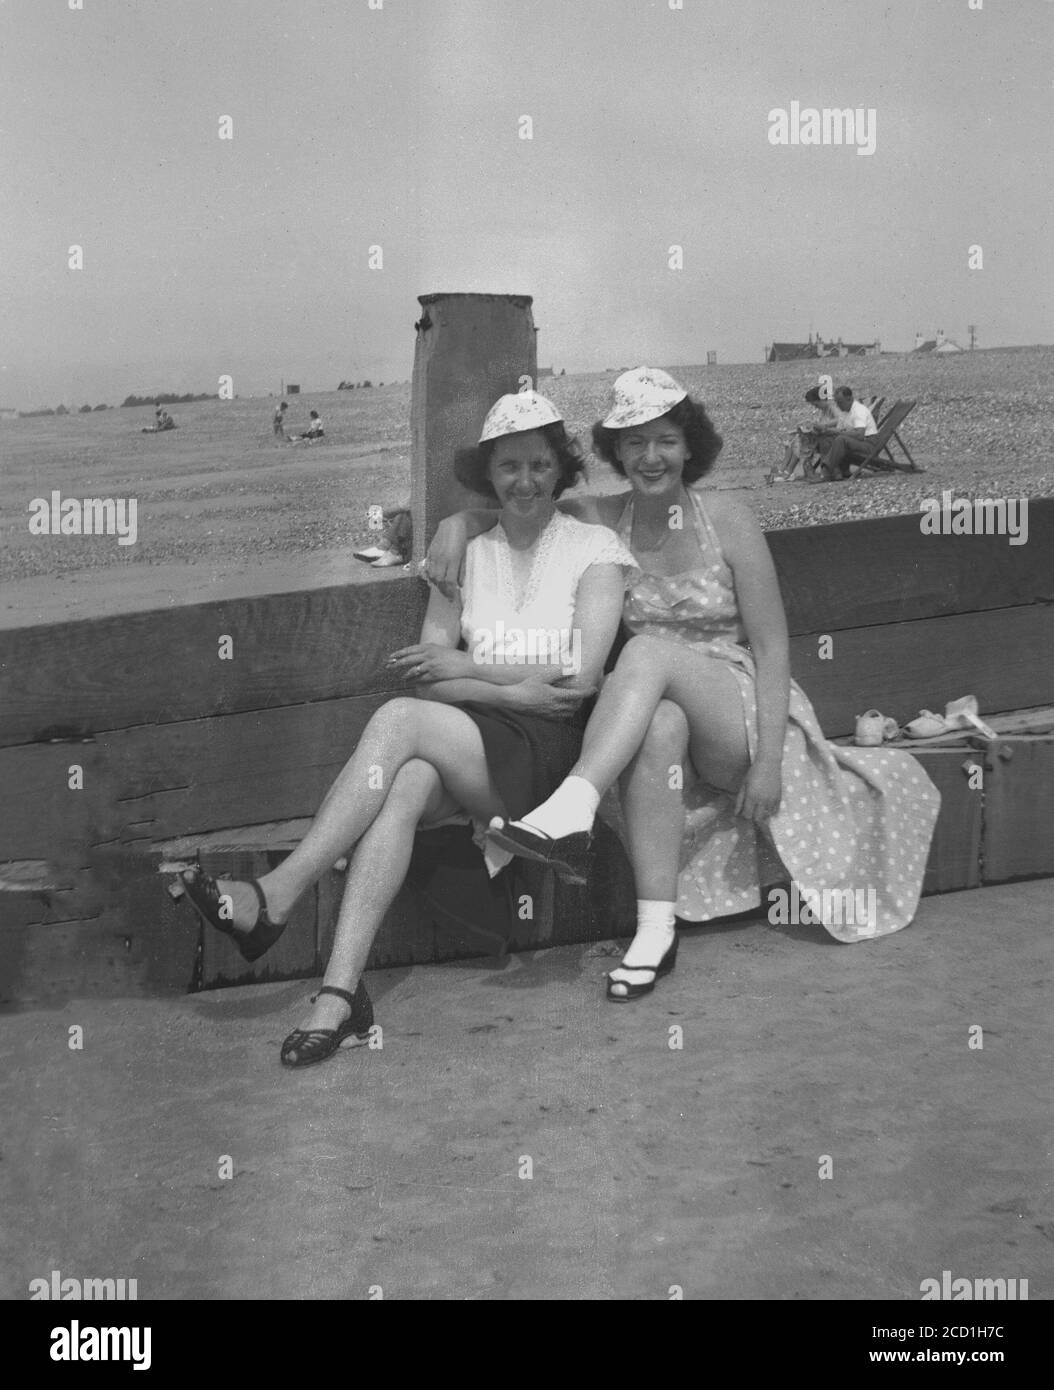 années 1950, historique, « une jambe de force » ! Deux dames assises sur un brise-roche en bois à la plage avec leurs jupes tirées vers le haut pour obtenir un peu de soleil sur leurs jambes, Hayling Island, Angleterre, Royaume-Uni. L'une des femmes porte des chaussettes et des chaussures blanches de longueur cheville, un look populaire parmi les femmes de cette époque. Banque D'Images